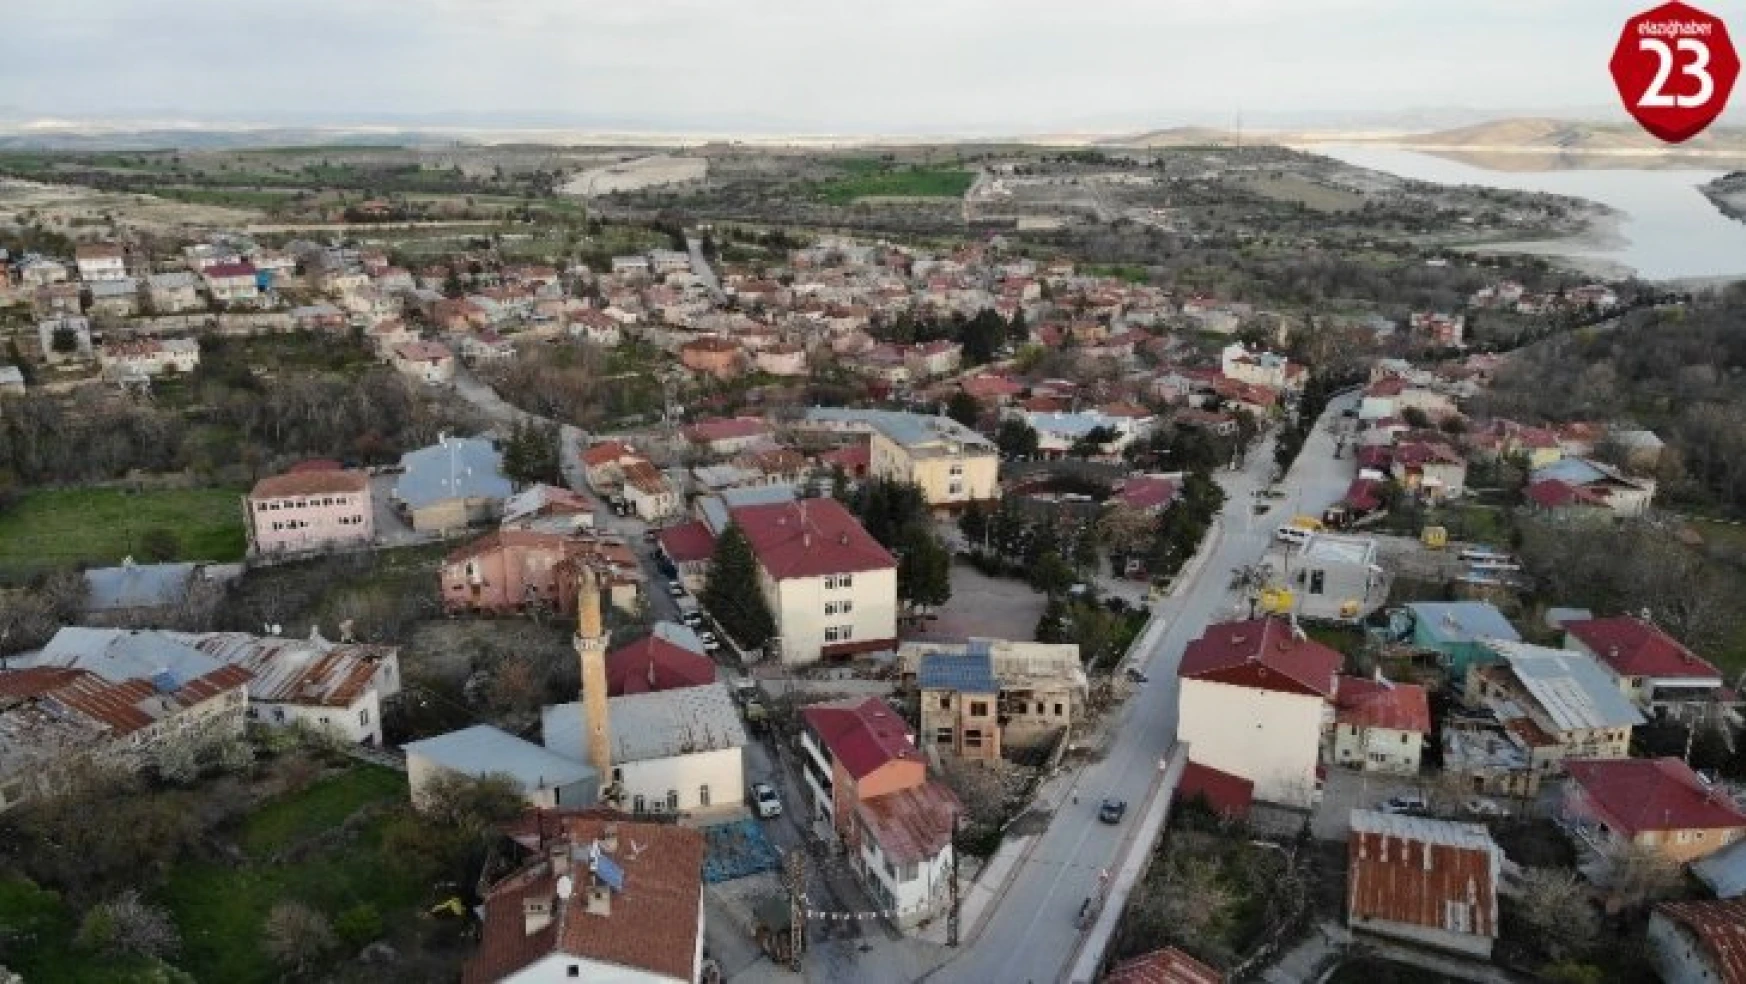 Türkiye'nin en yaşlı ilçesi Ağın'a koronaya karşı özel önlem